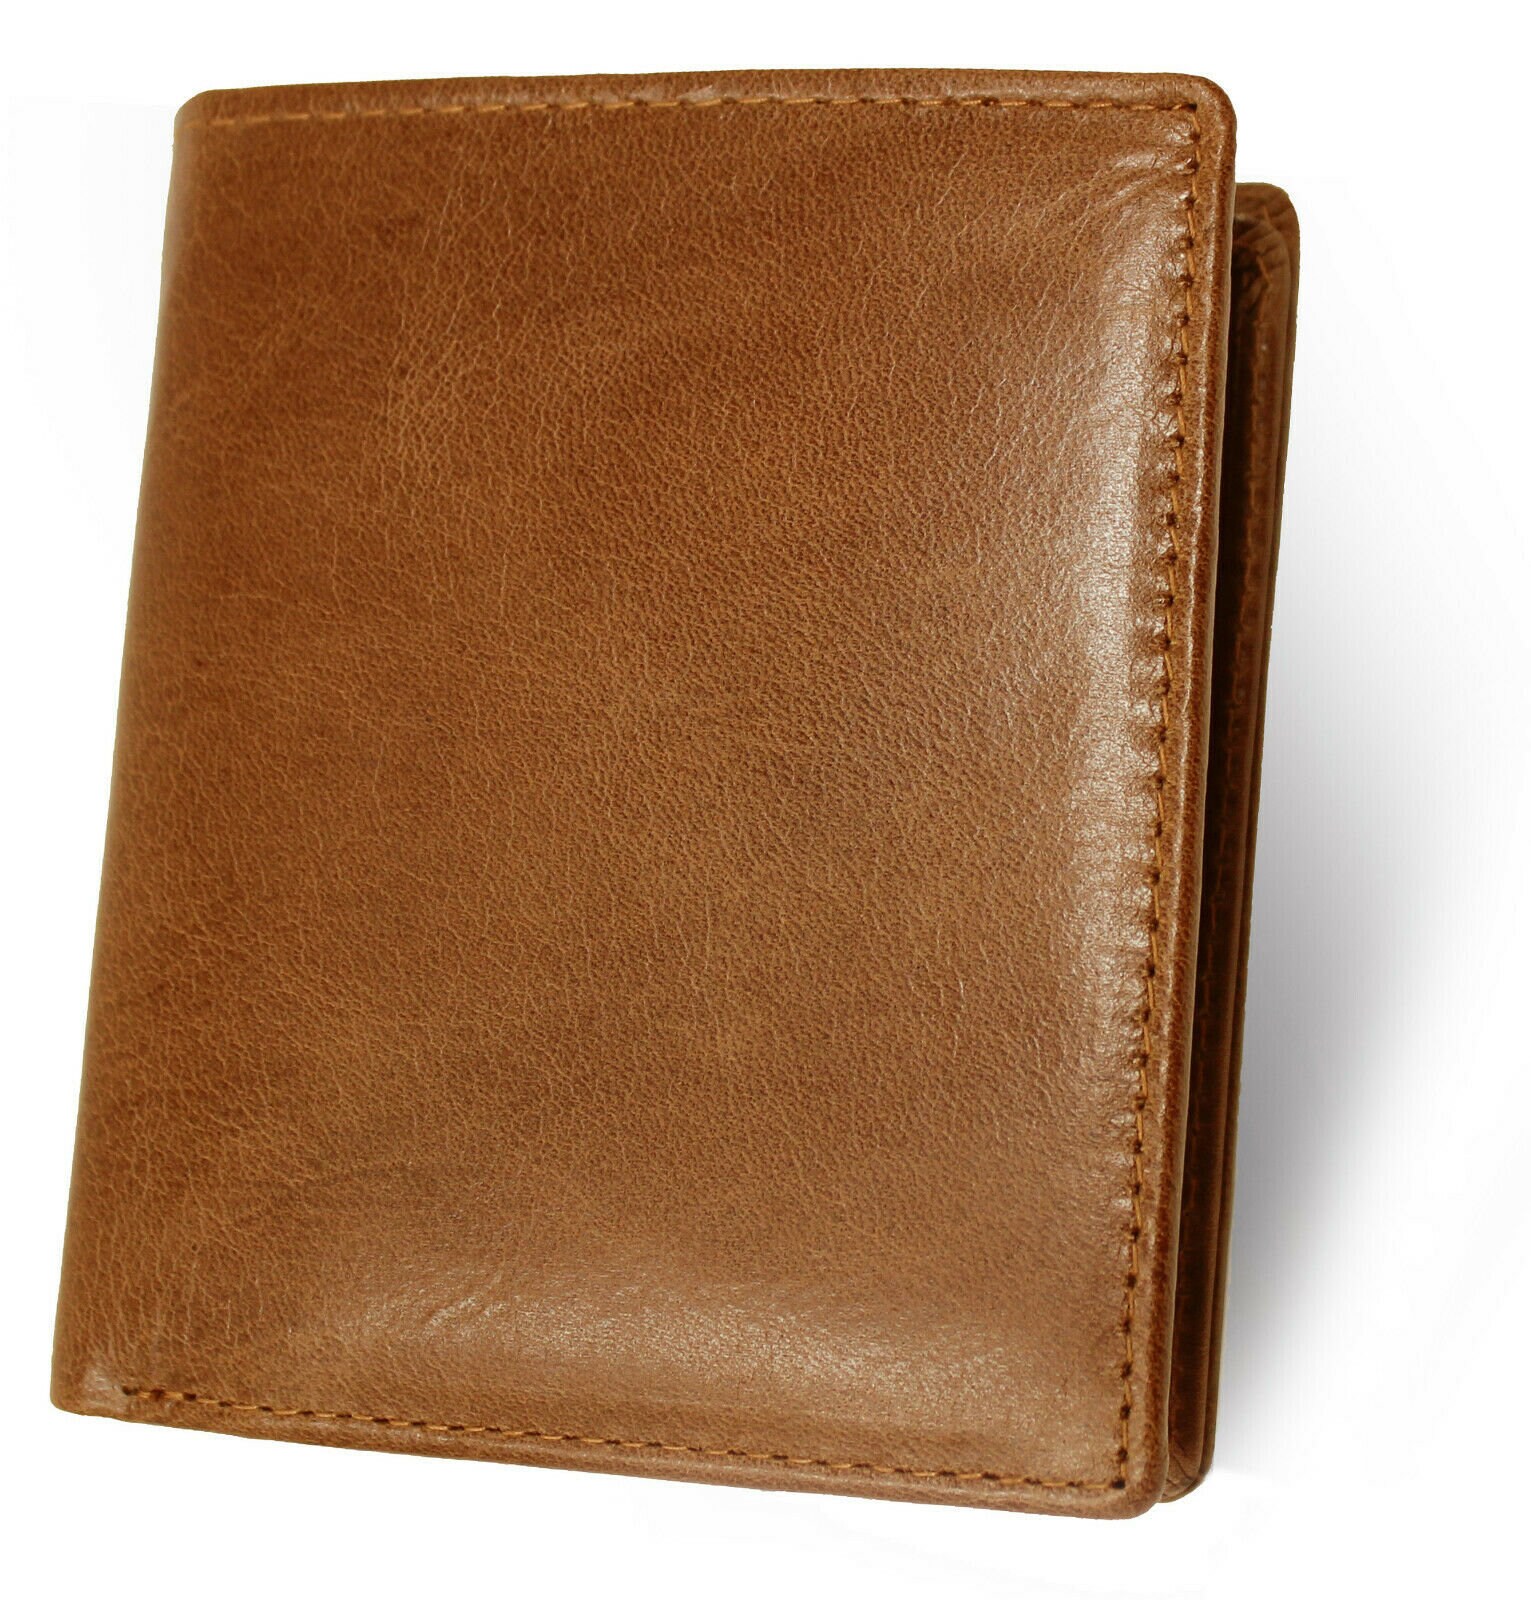 Topsum London Men Designer Leather Wallet RFID Blocking Mans -  UK